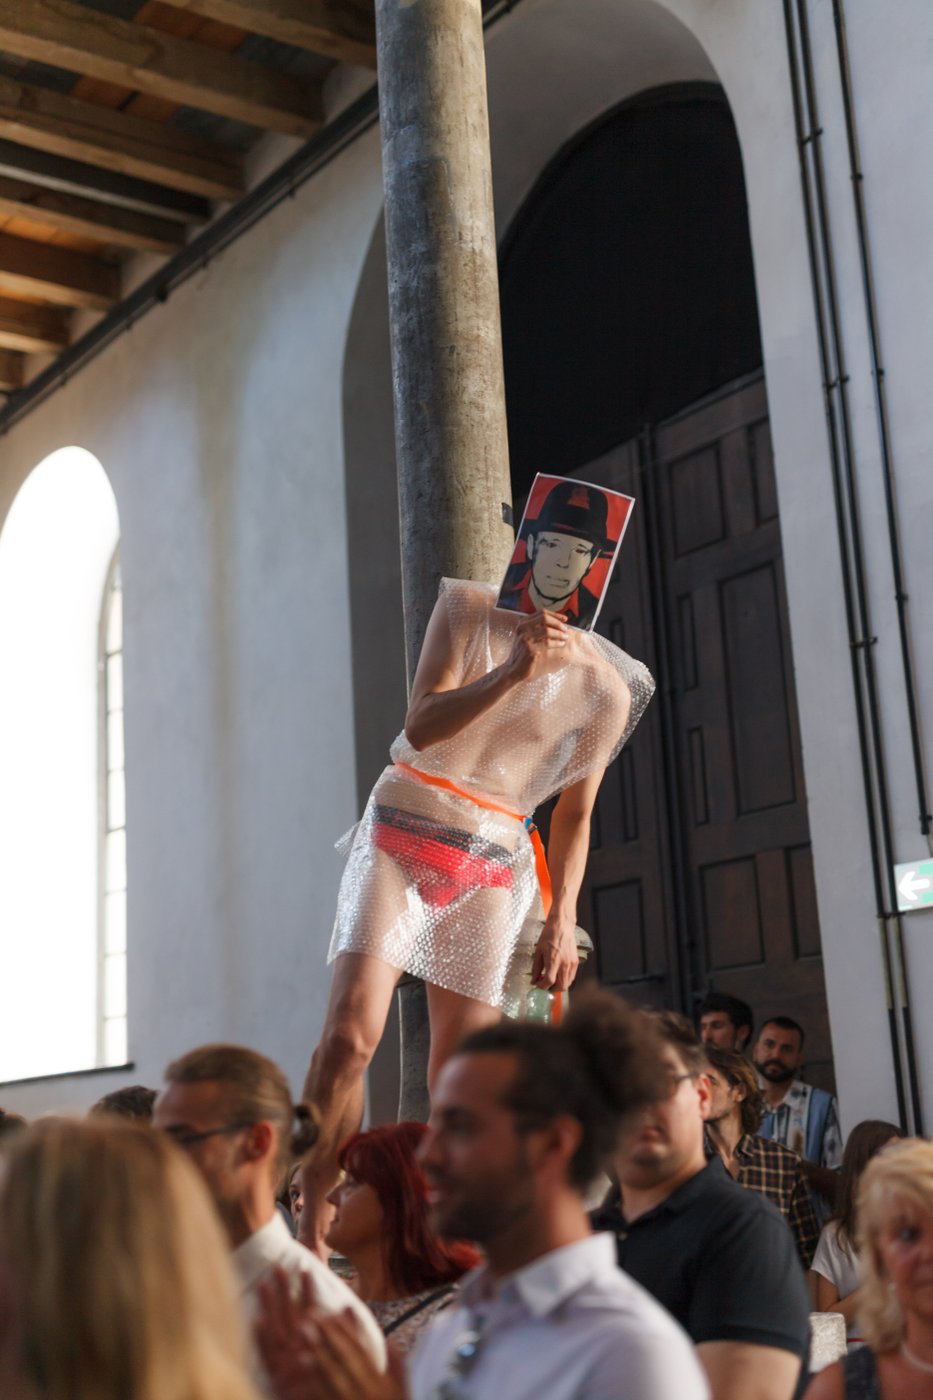 Künstlerische Intervention bei der Abschlussfeier 2019. Eine Person hat seinen nackten Körper mit Luftpolsterfolie umwickelt. Man sieht die rote Unterhose, vor das Gesicht hält er ein Portrait von Josef Beuys.